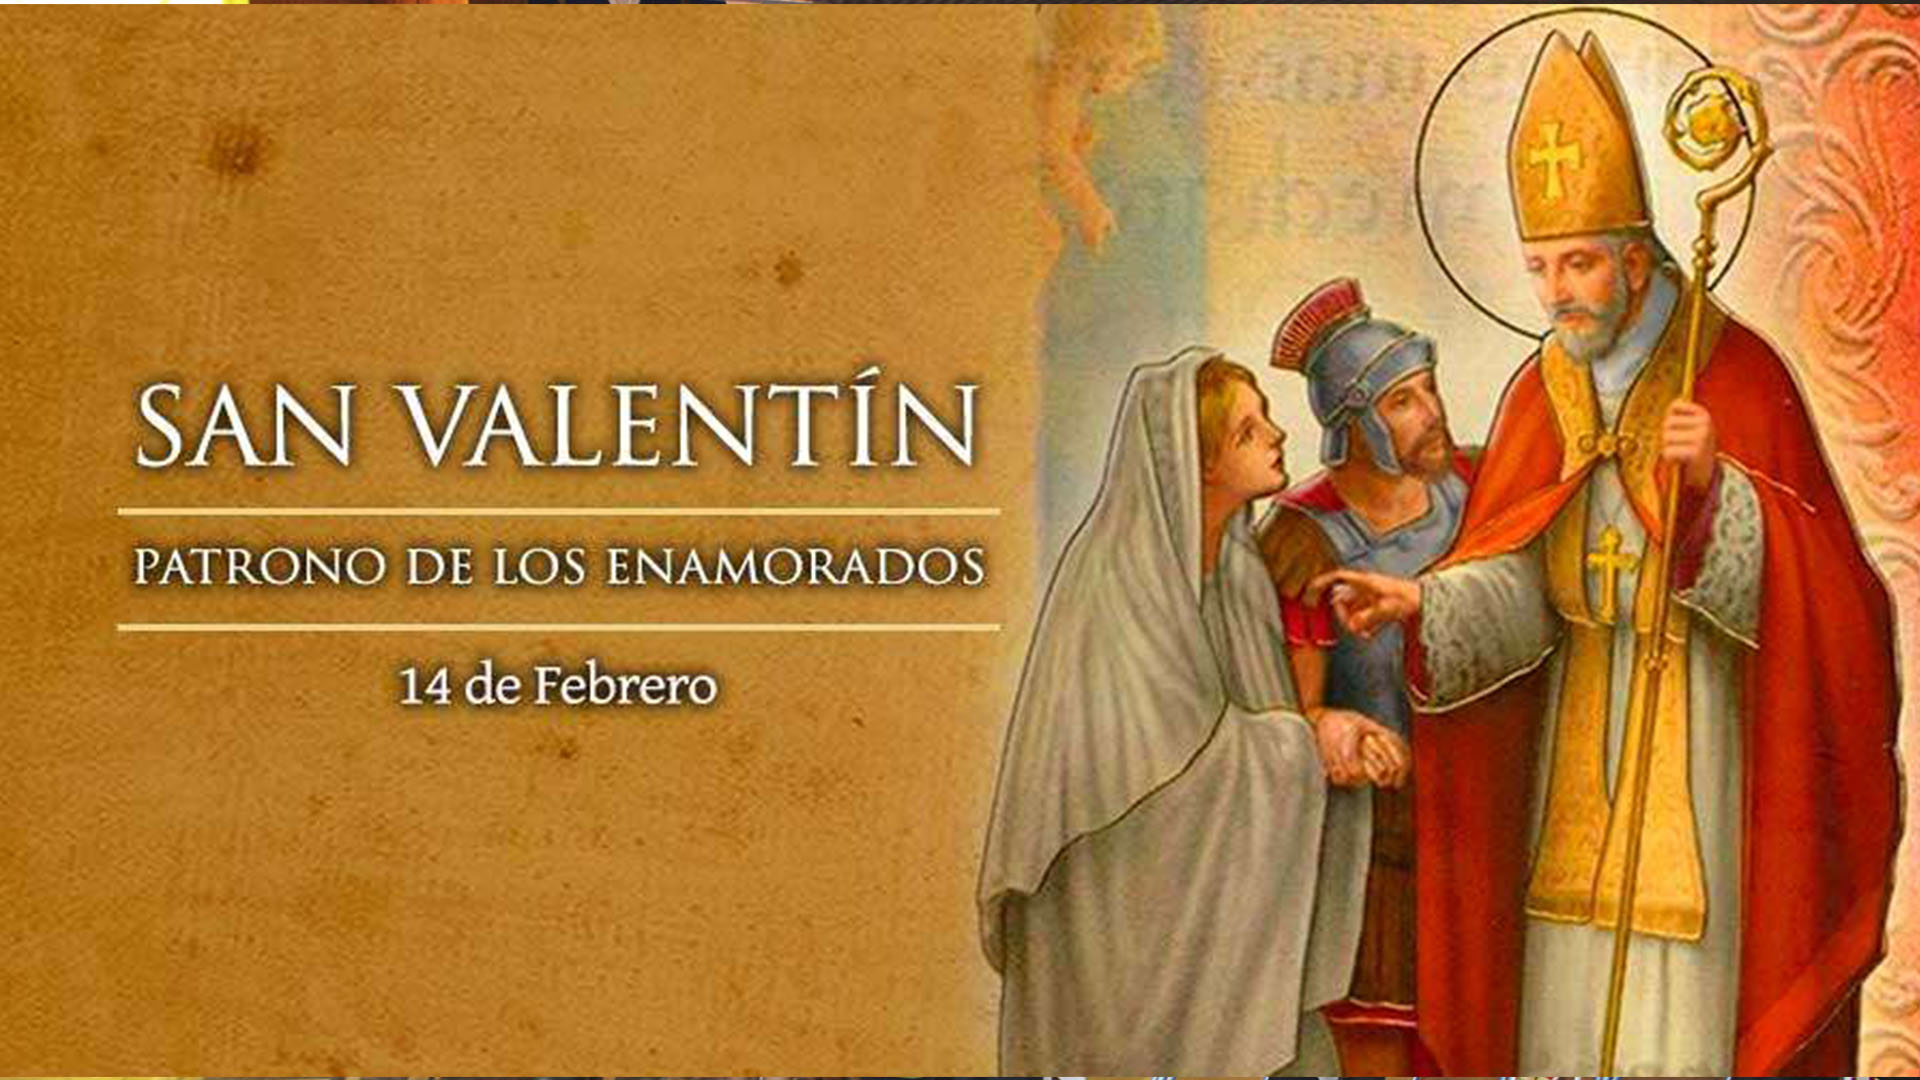 San Valentín - Patrono de los enamorados